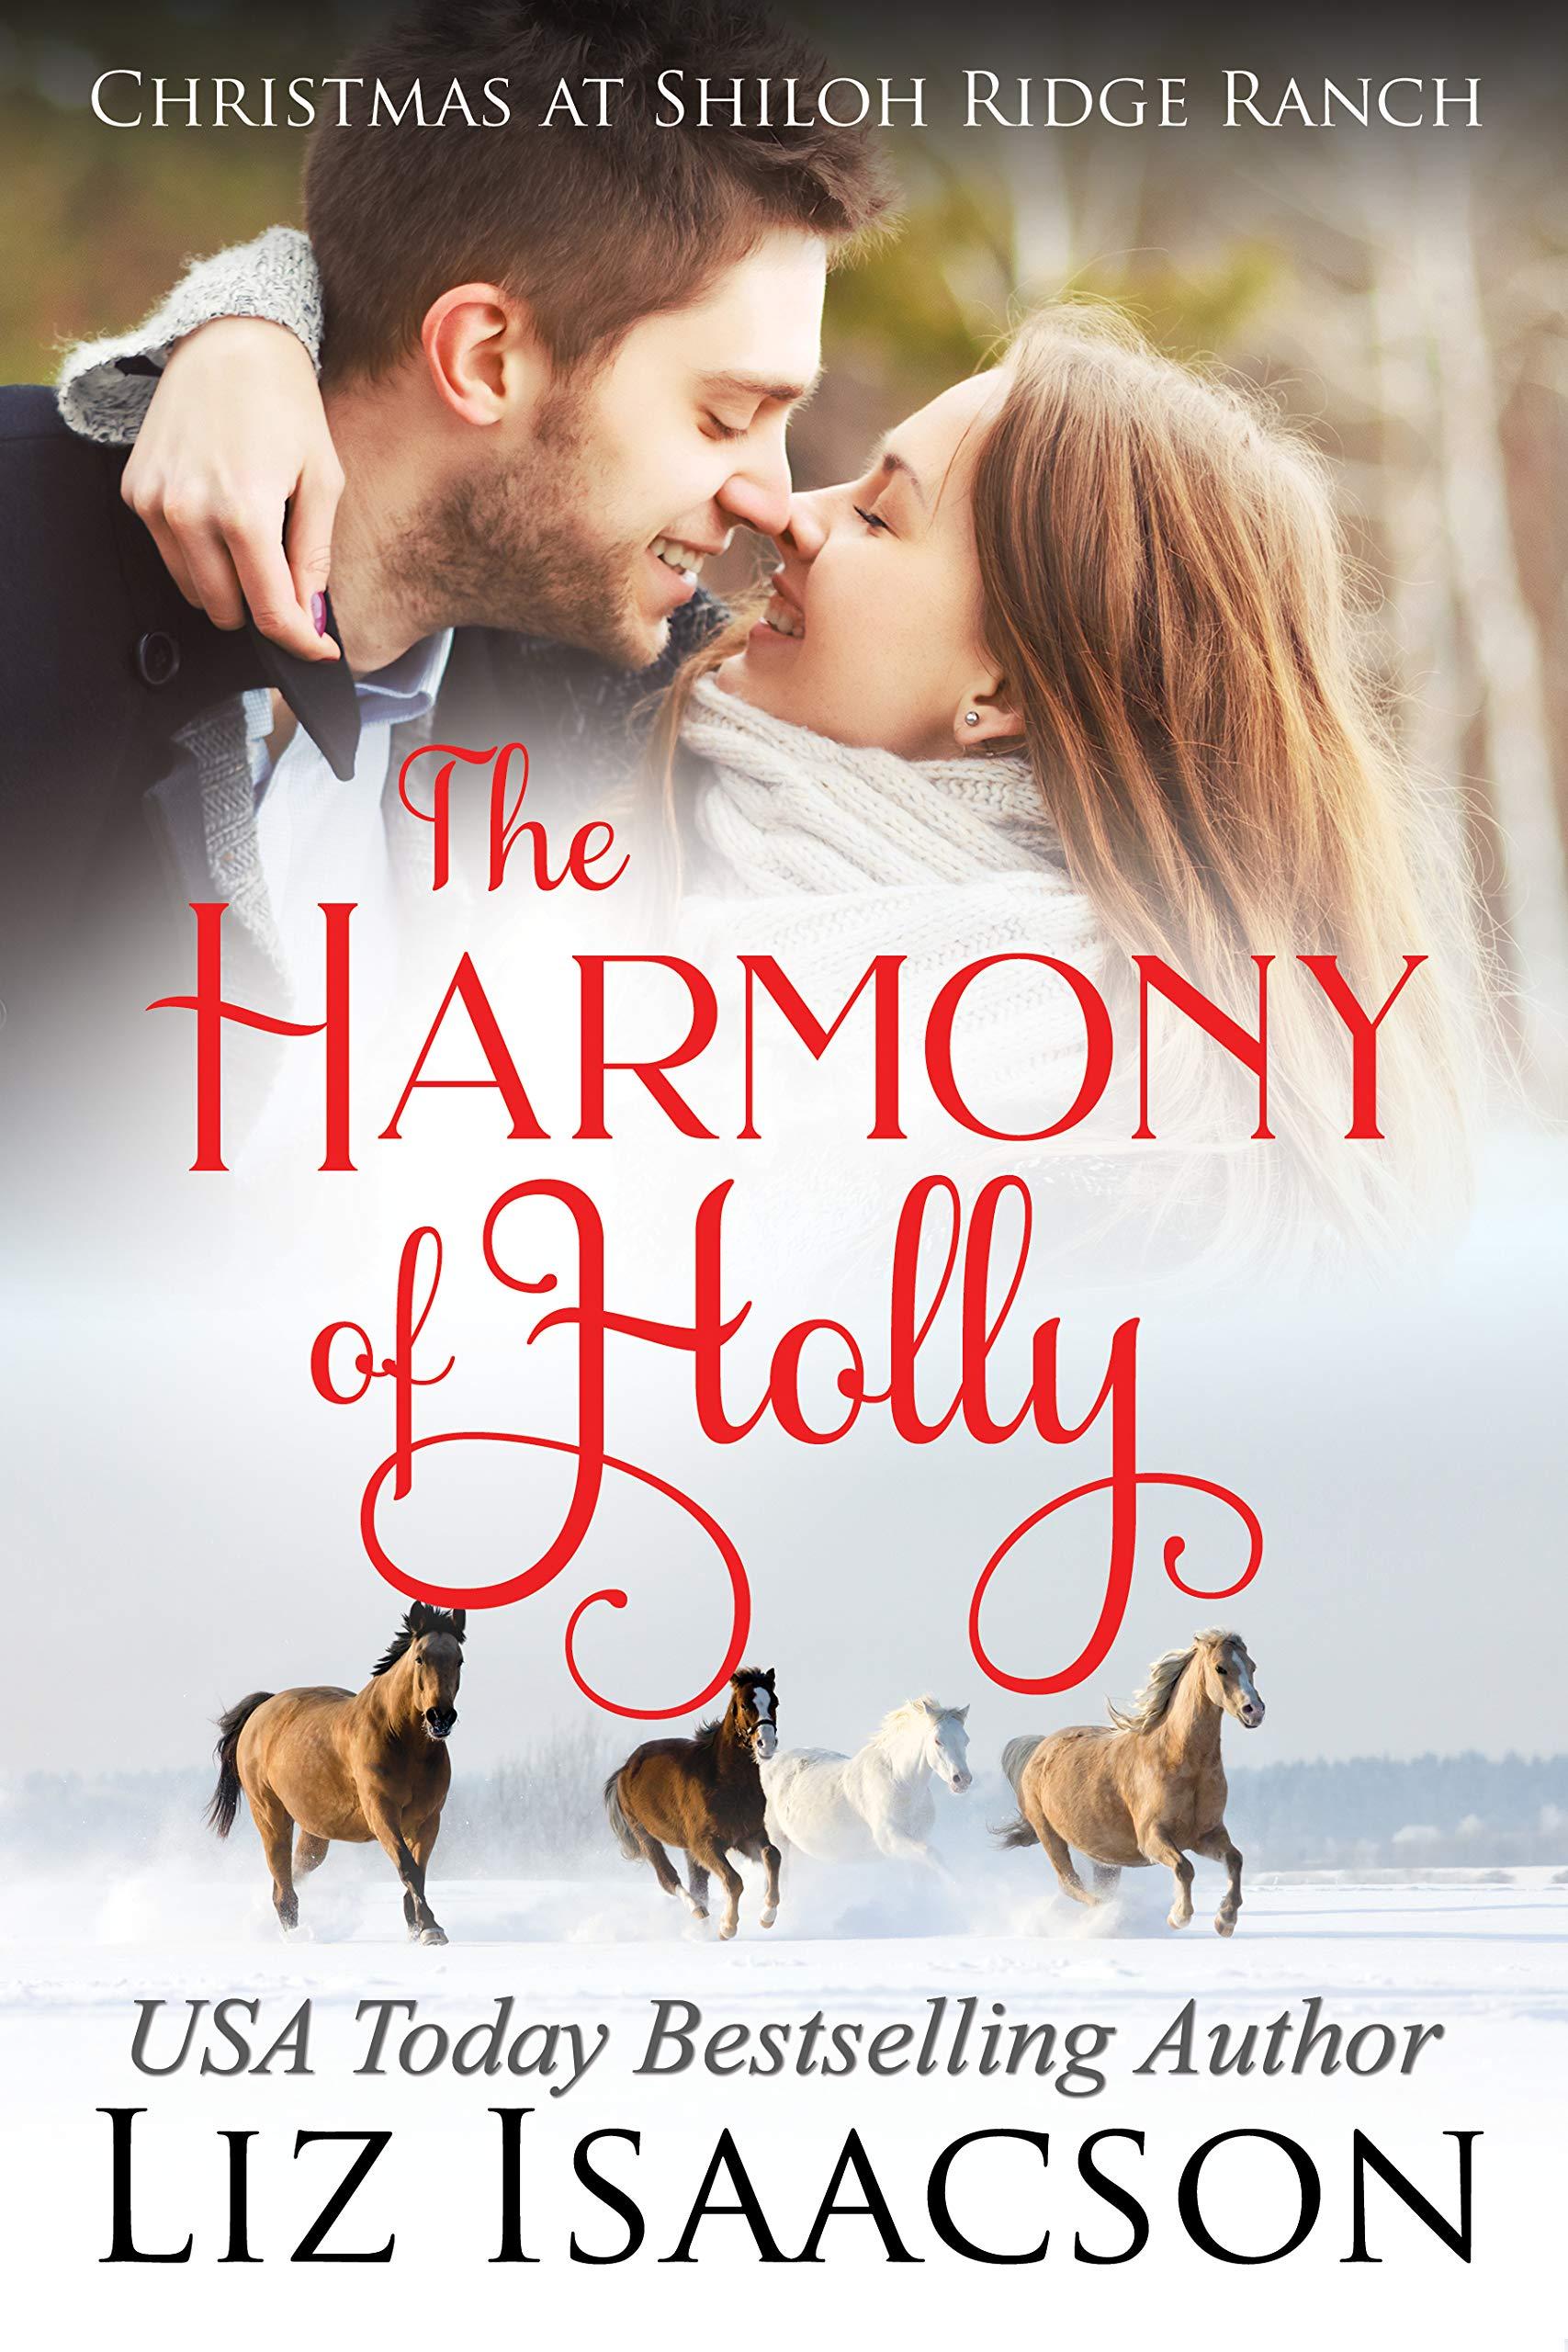 The Harmony of Holly